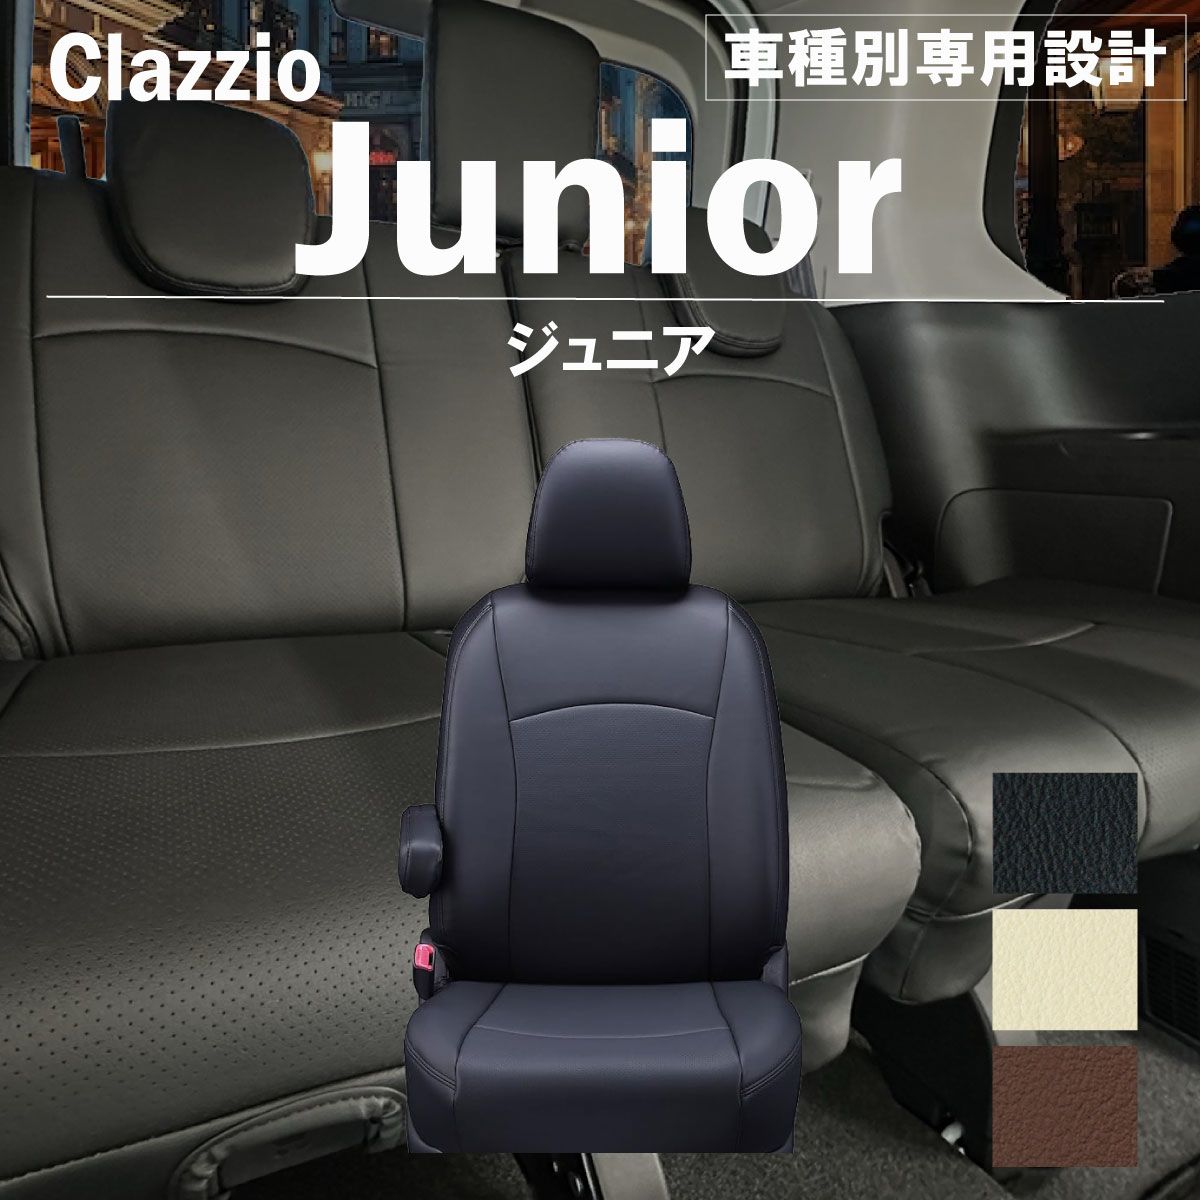 超高品質C26セレナ/Sハイブリ クラッツィオ Clazzio.Jr レザー調シートカバー 日産用